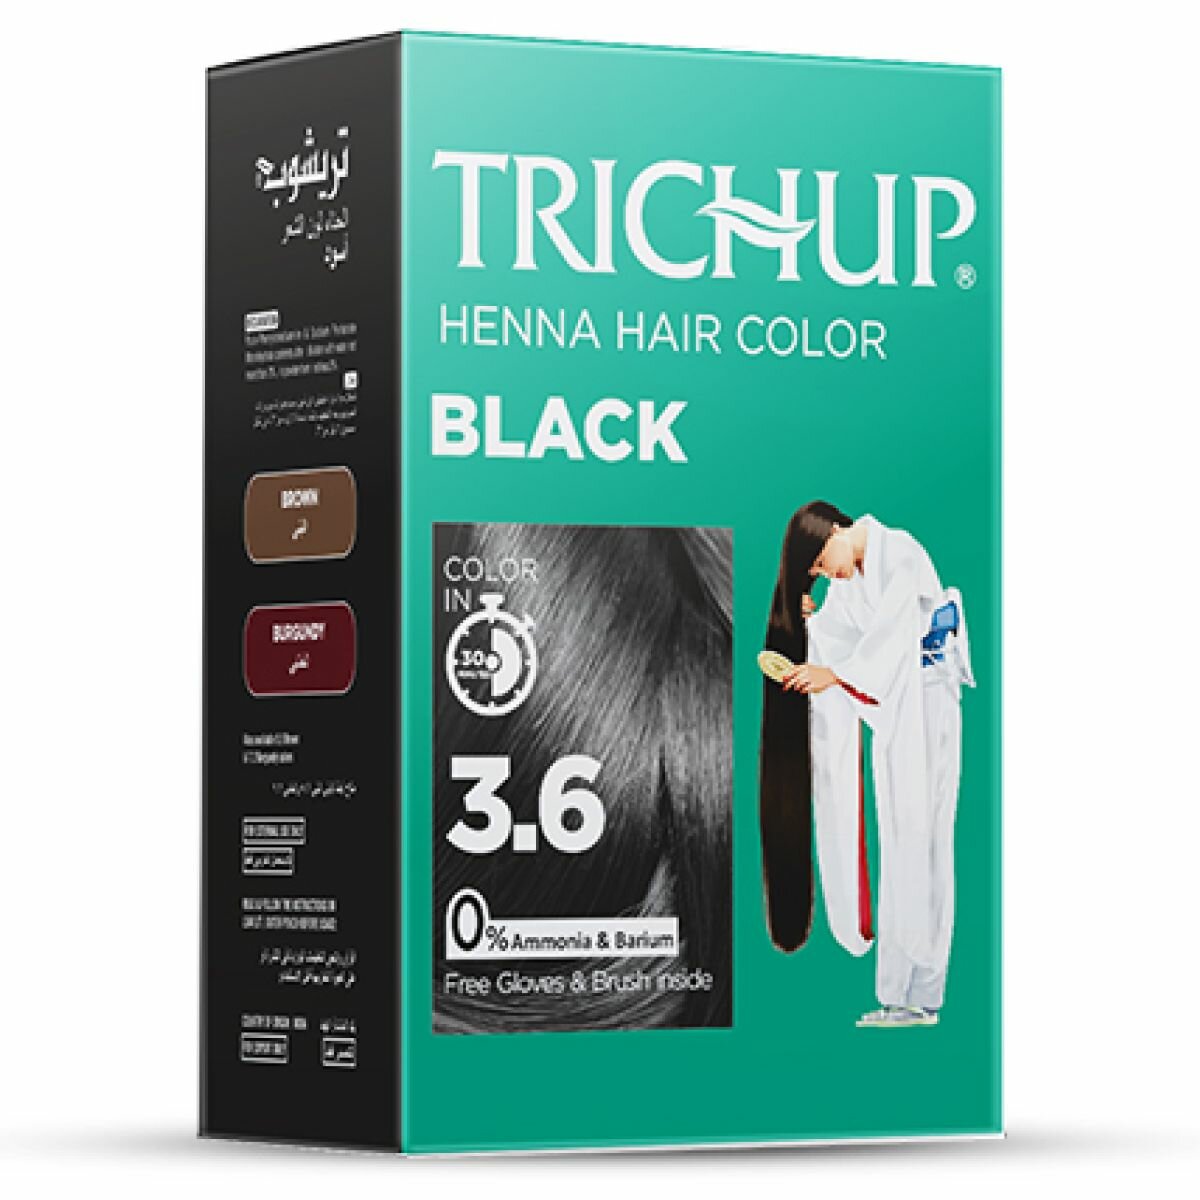 Краска для волос Vasu Trichup Henna Hair Color Black черная на основе хны, 60 г